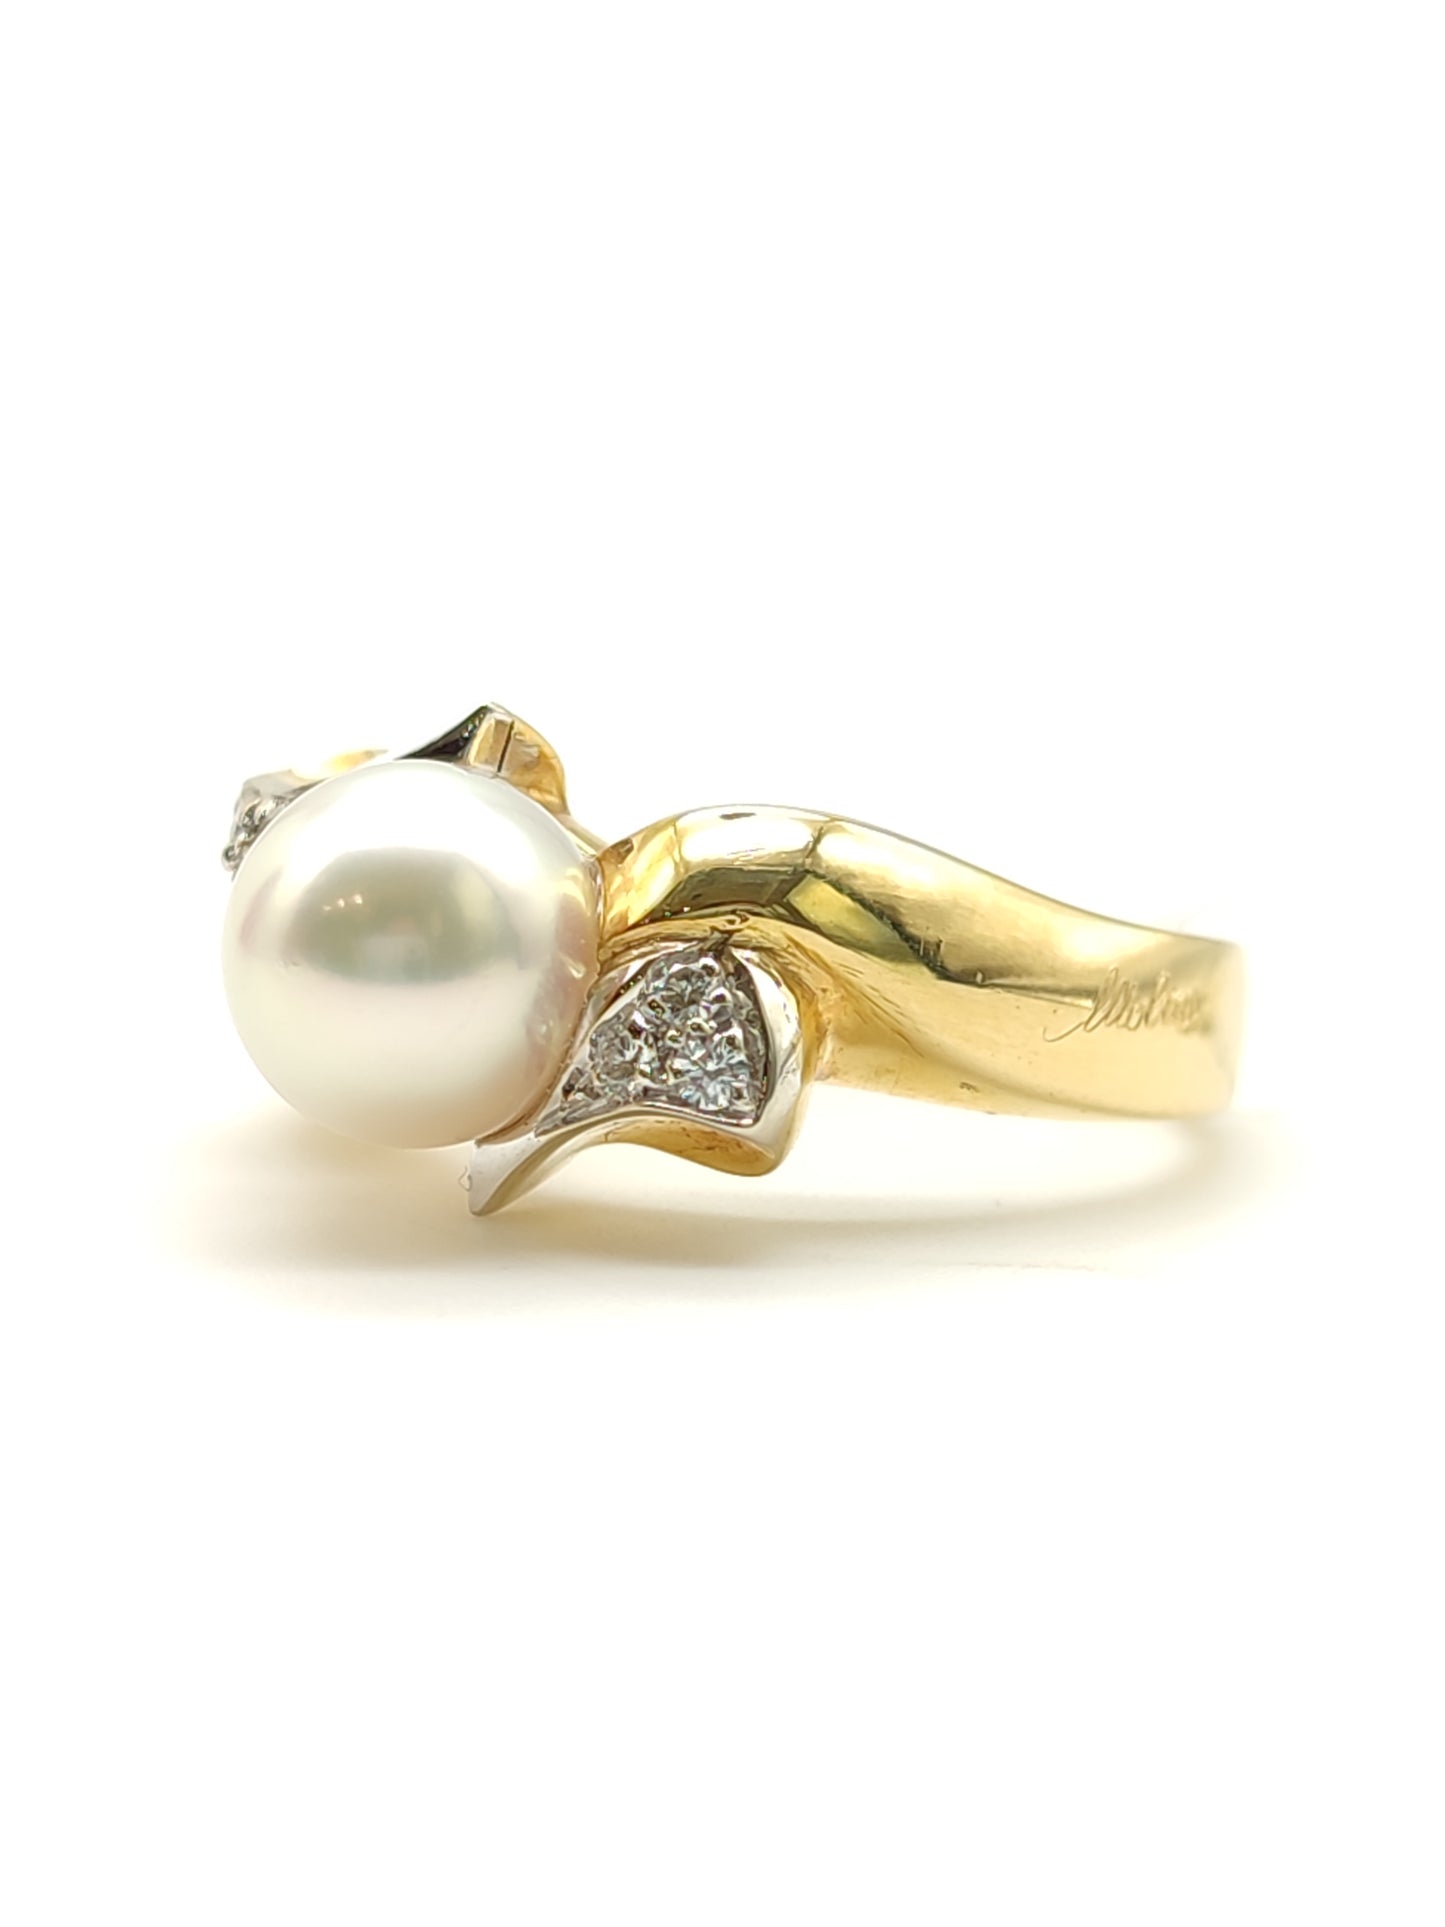 Pavan - Anello in oro con perla e diamanti